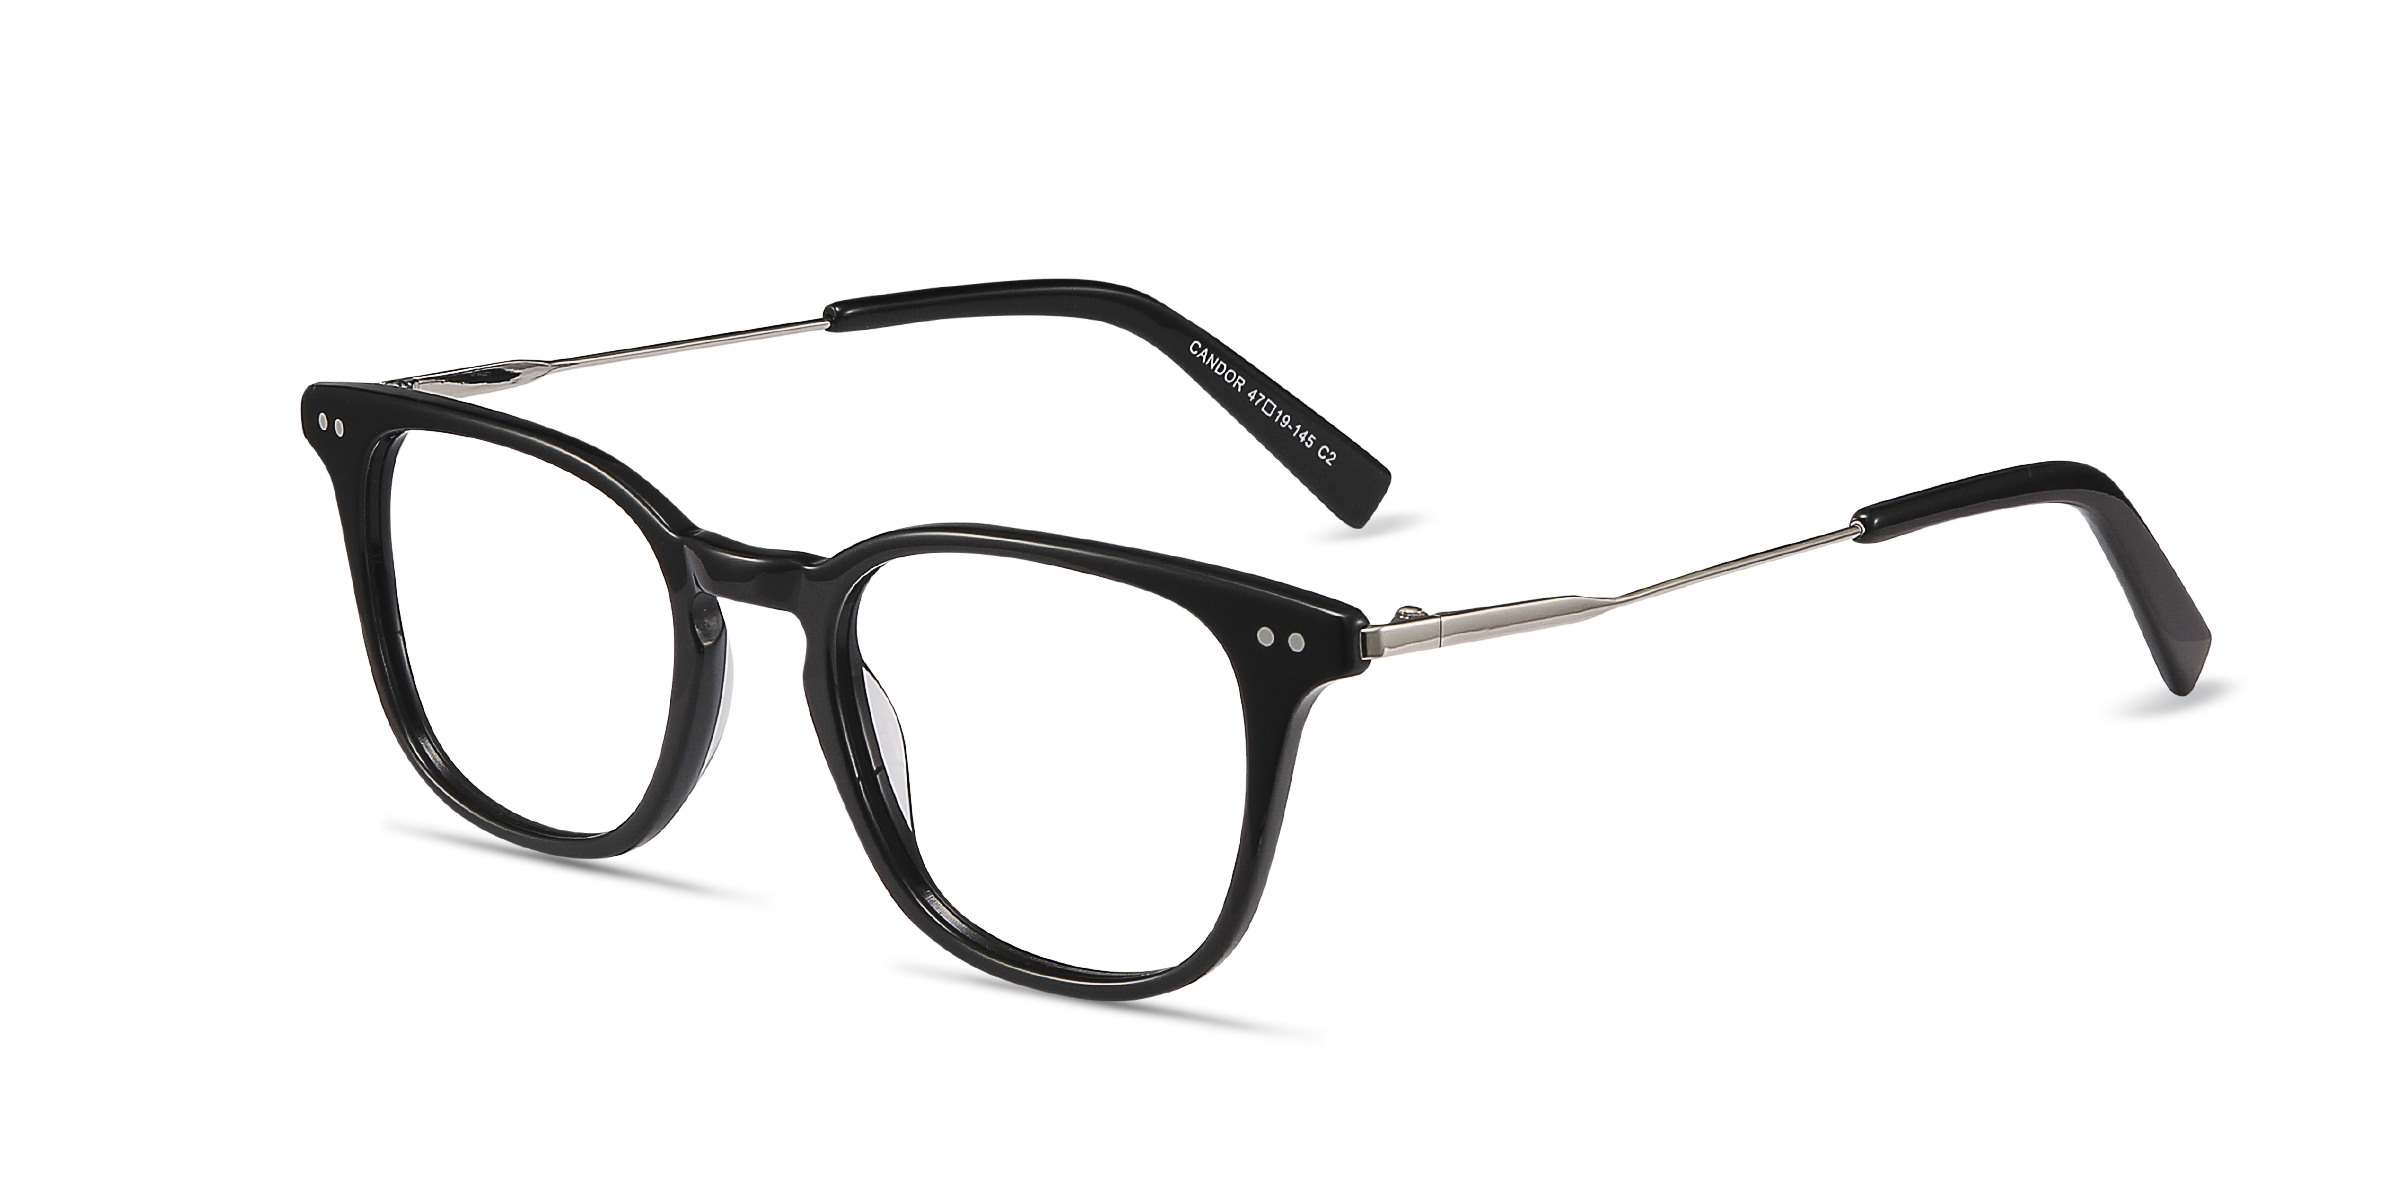 Candor Square Black Full Rim Eyeglasses | Eyebuydirect